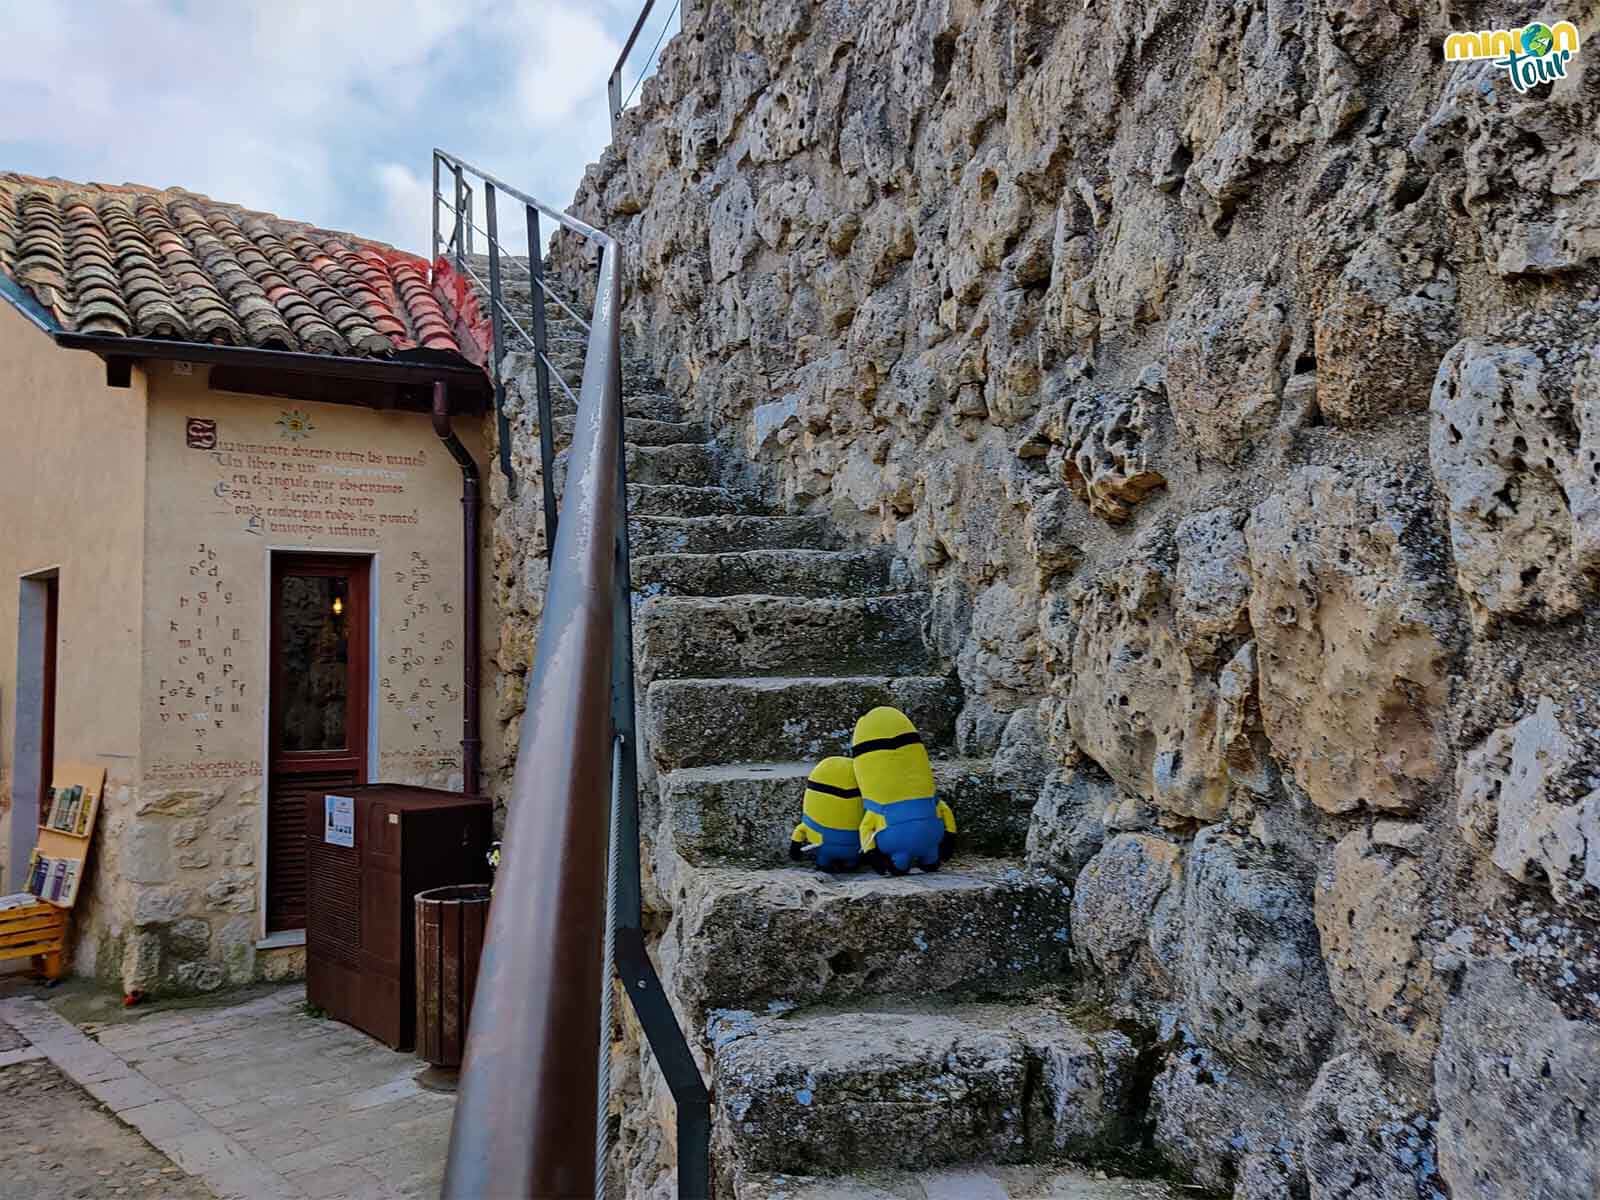 Hemos encontrado las escaleras para subir a la muralla de Urueña